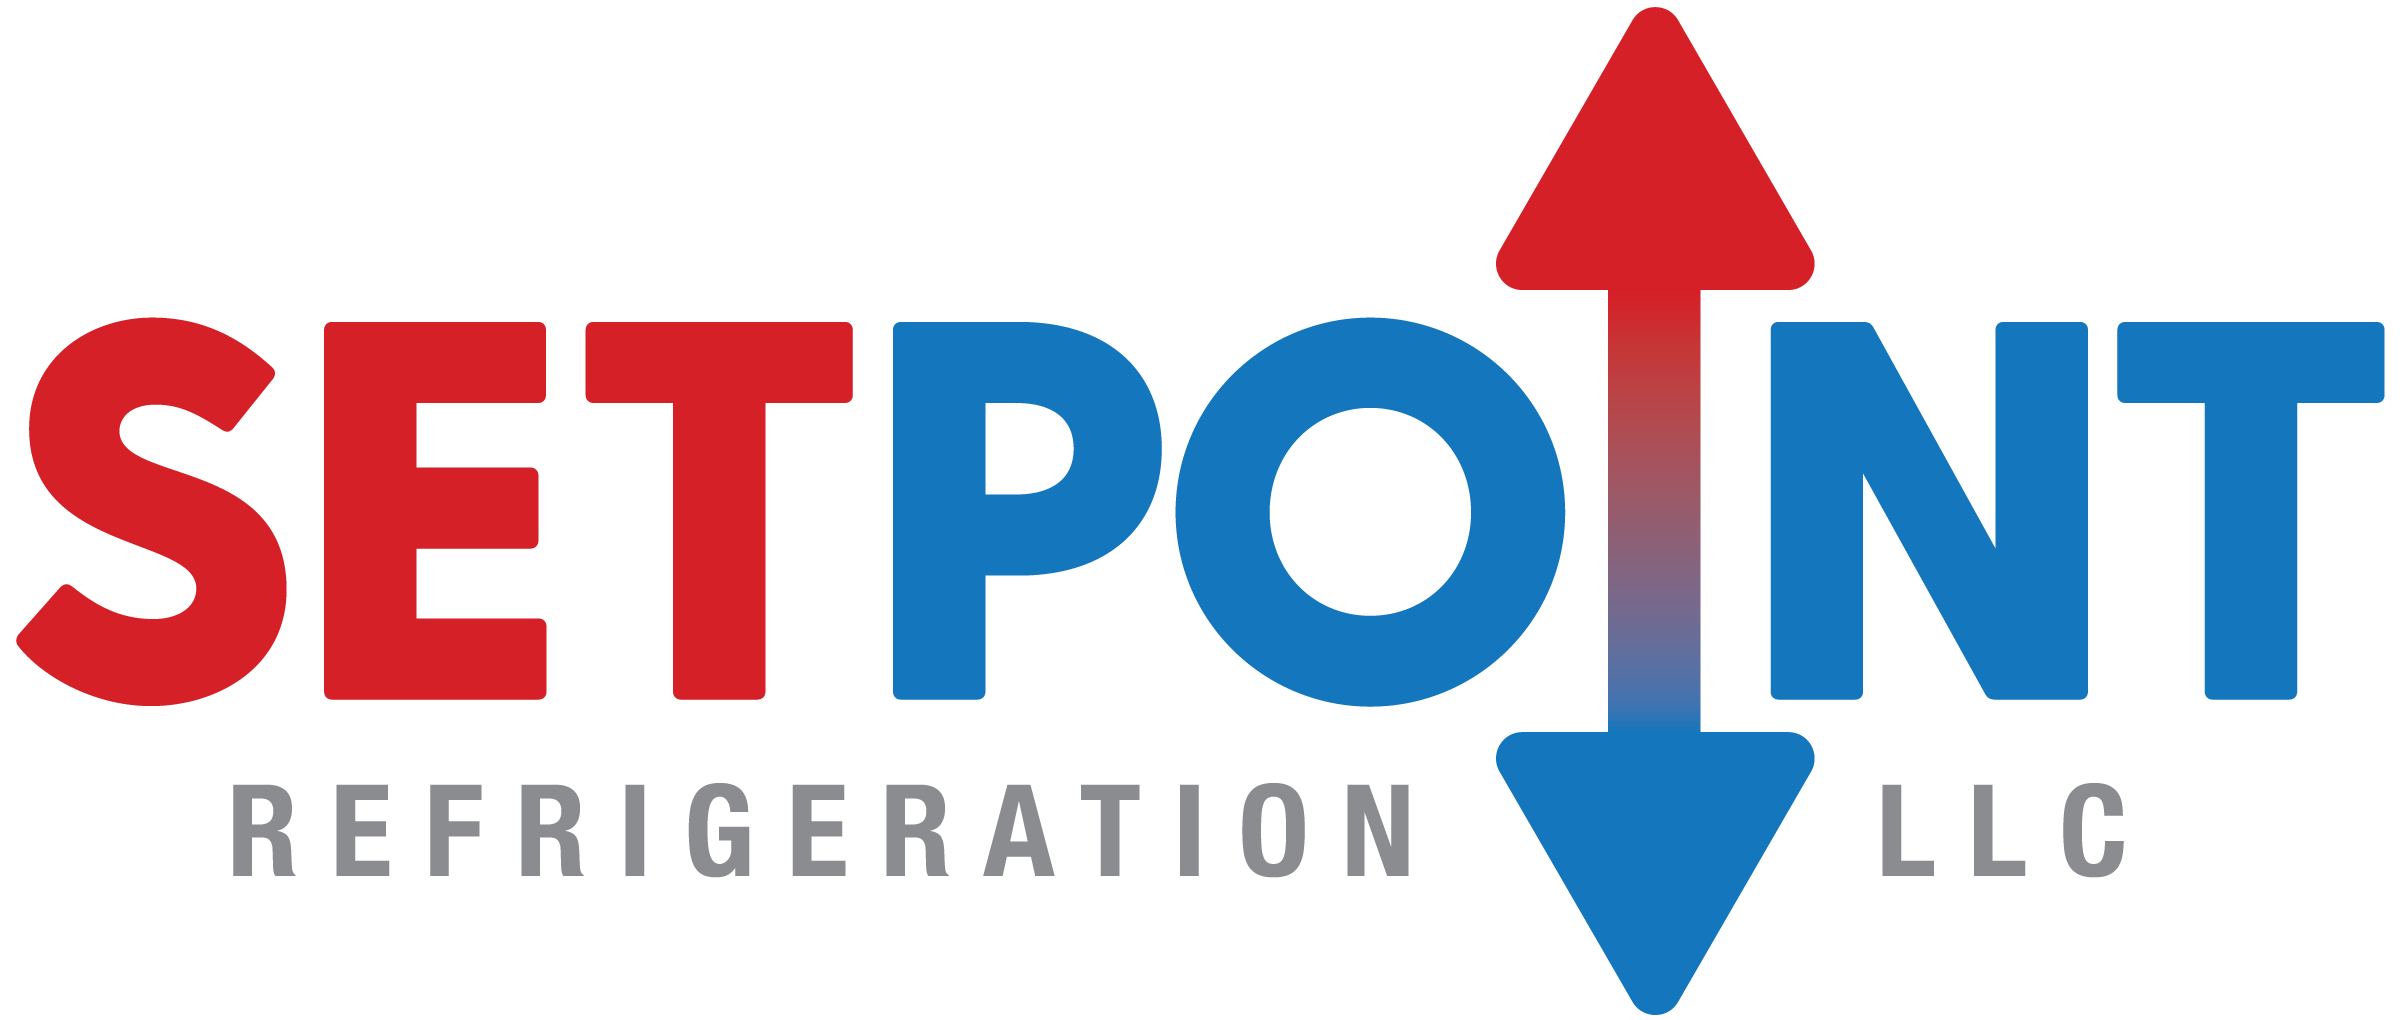 Setpoint Refrigeration, LLC Logo